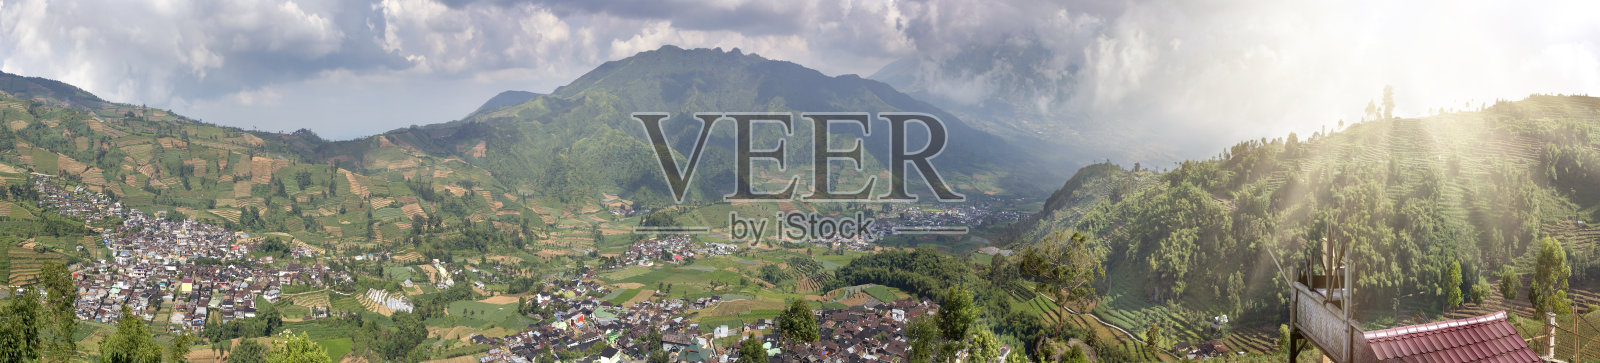 Java,印度尼西亚。从山上的山路上可以看到绿色的田野和山谷中的村庄照片摄影图片